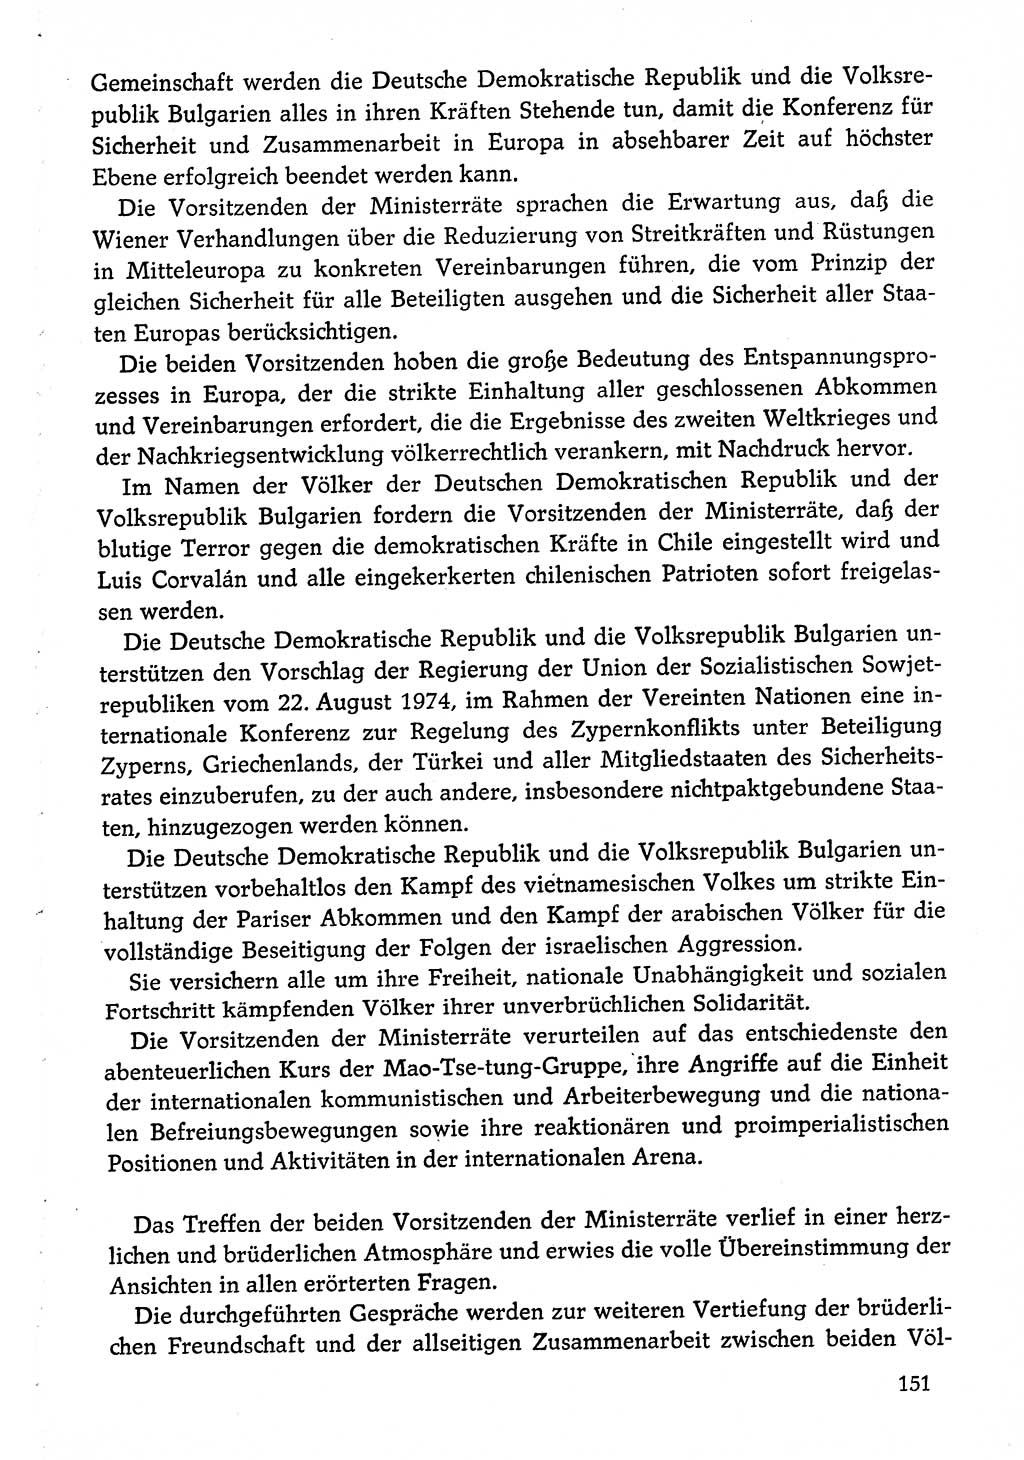 Dokumente der Sozialistischen Einheitspartei Deutschlands (SED) [Deutsche Demokratische Republik (DDR)] 1974-1975, Seite 151 (Dok. SED DDR 1978, Bd. ⅩⅤ, S. 151)